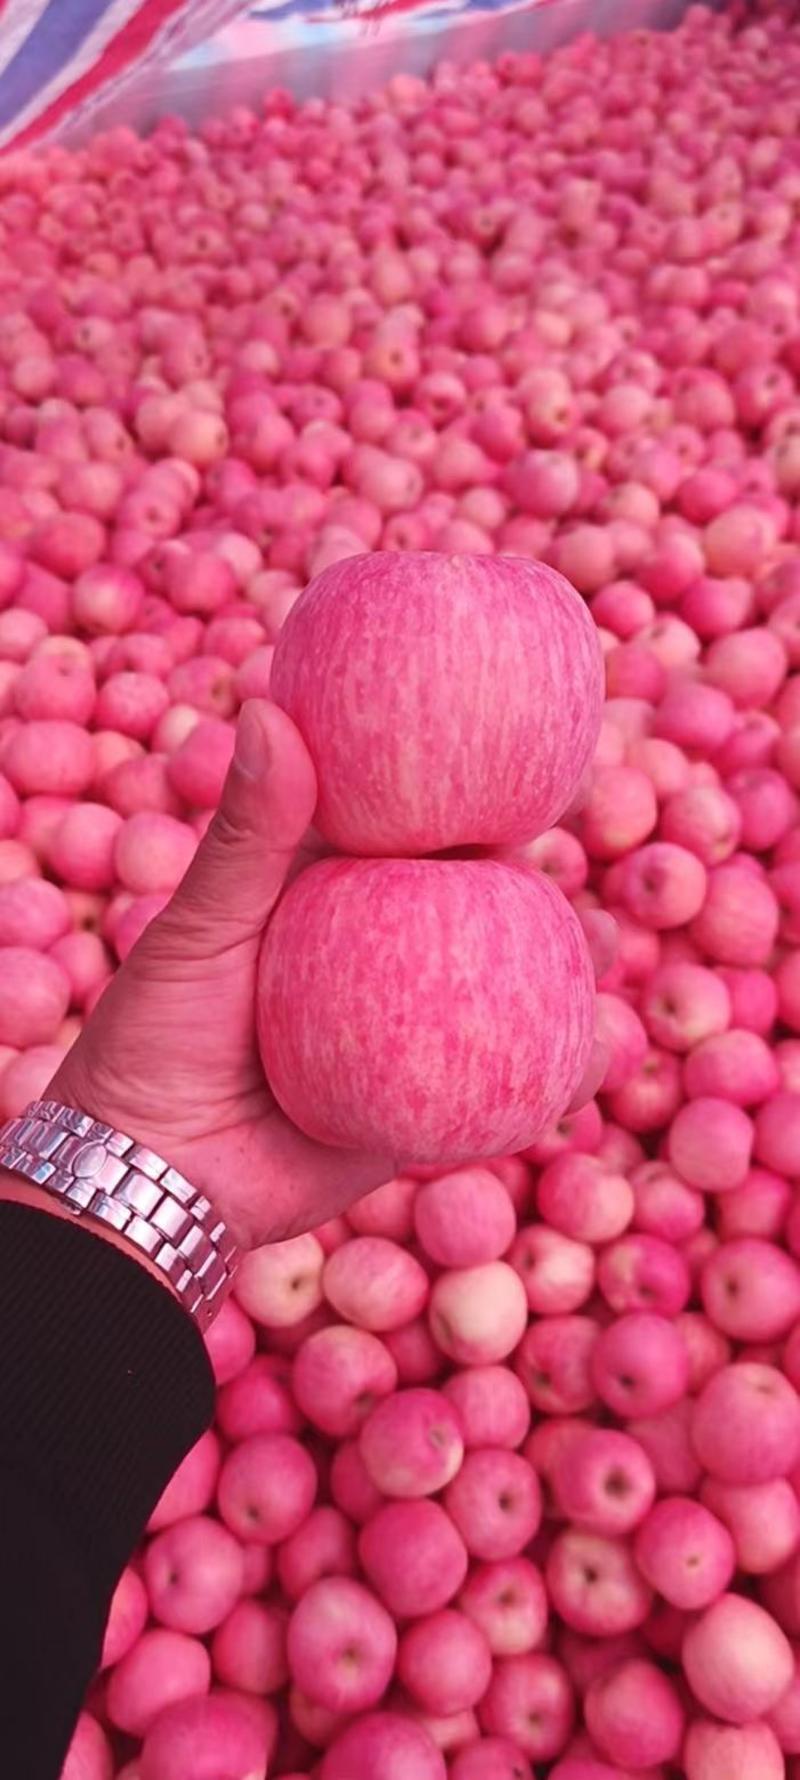 优选红富士苹果大量上市，价格不高，颜色鲜艳，口感甜脆！